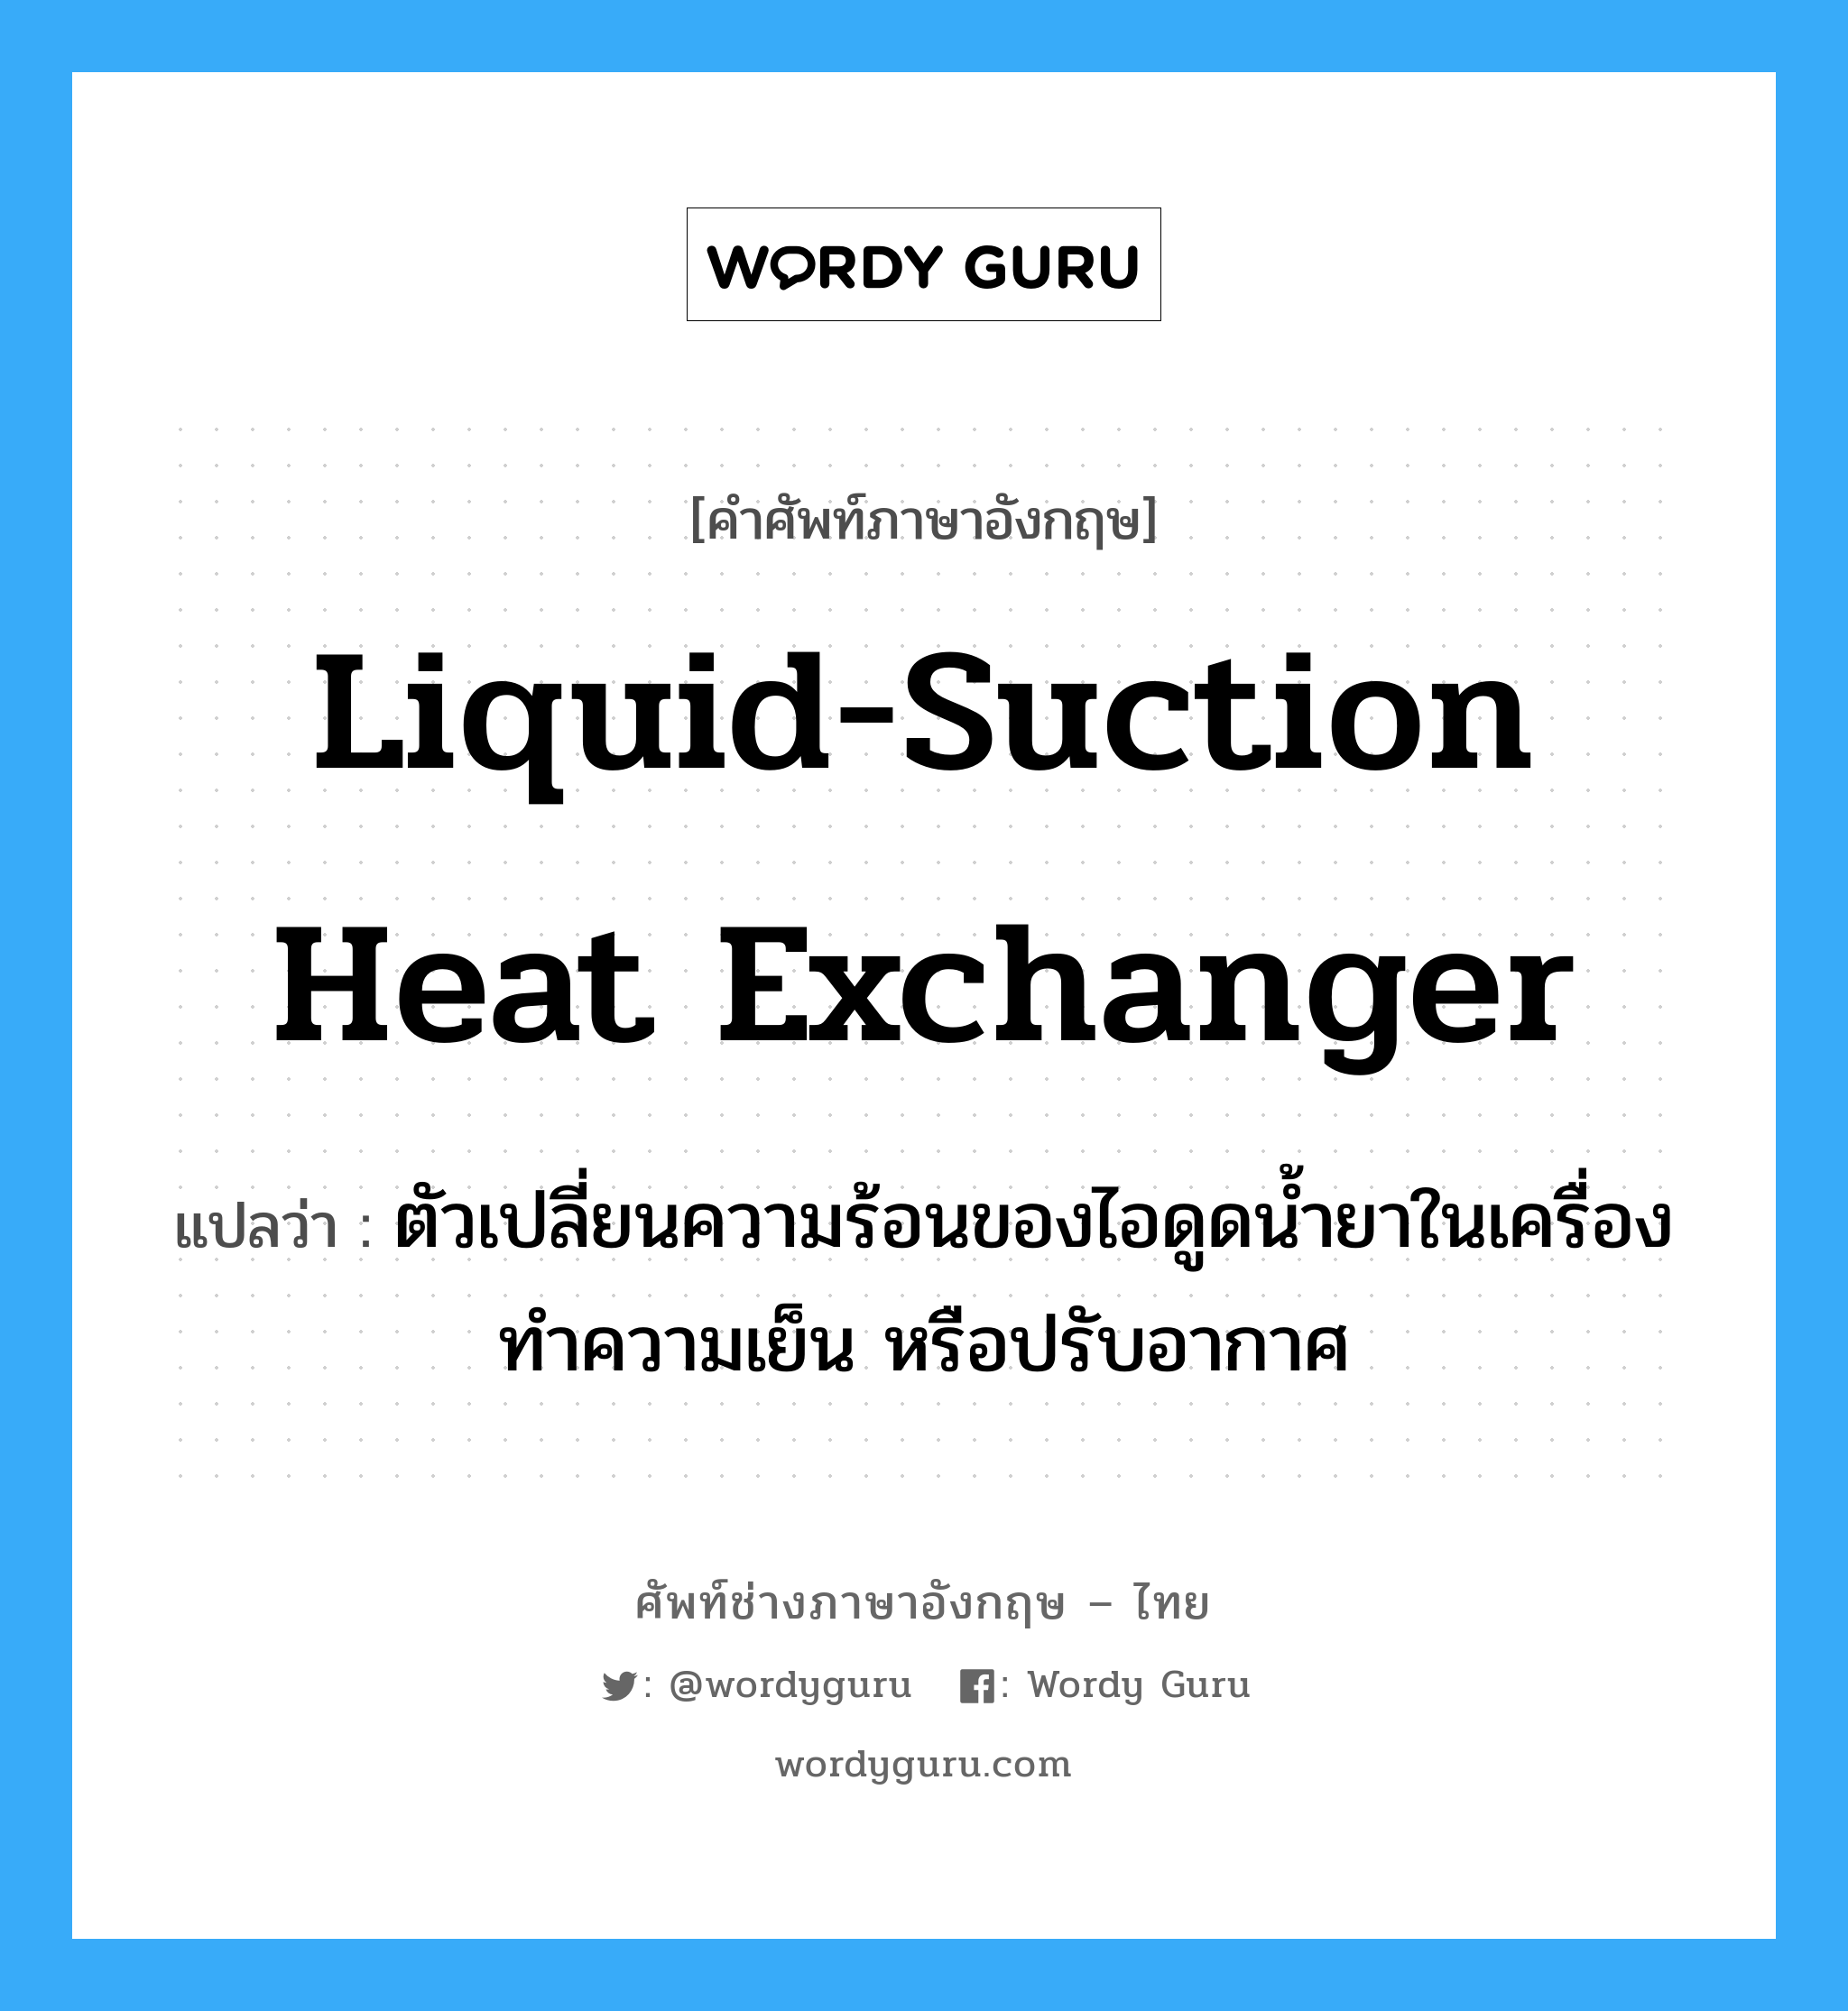 liquid-suction heat exchanger แปลว่า?, คำศัพท์ช่างภาษาอังกฤษ - ไทย liquid-suction heat exchanger คำศัพท์ภาษาอังกฤษ liquid-suction heat exchanger แปลว่า ตัวเปลี่ยนความร้อนของไอดูดน้ำยาในเครื่องทำความเย็น หรือปรับอากาศ